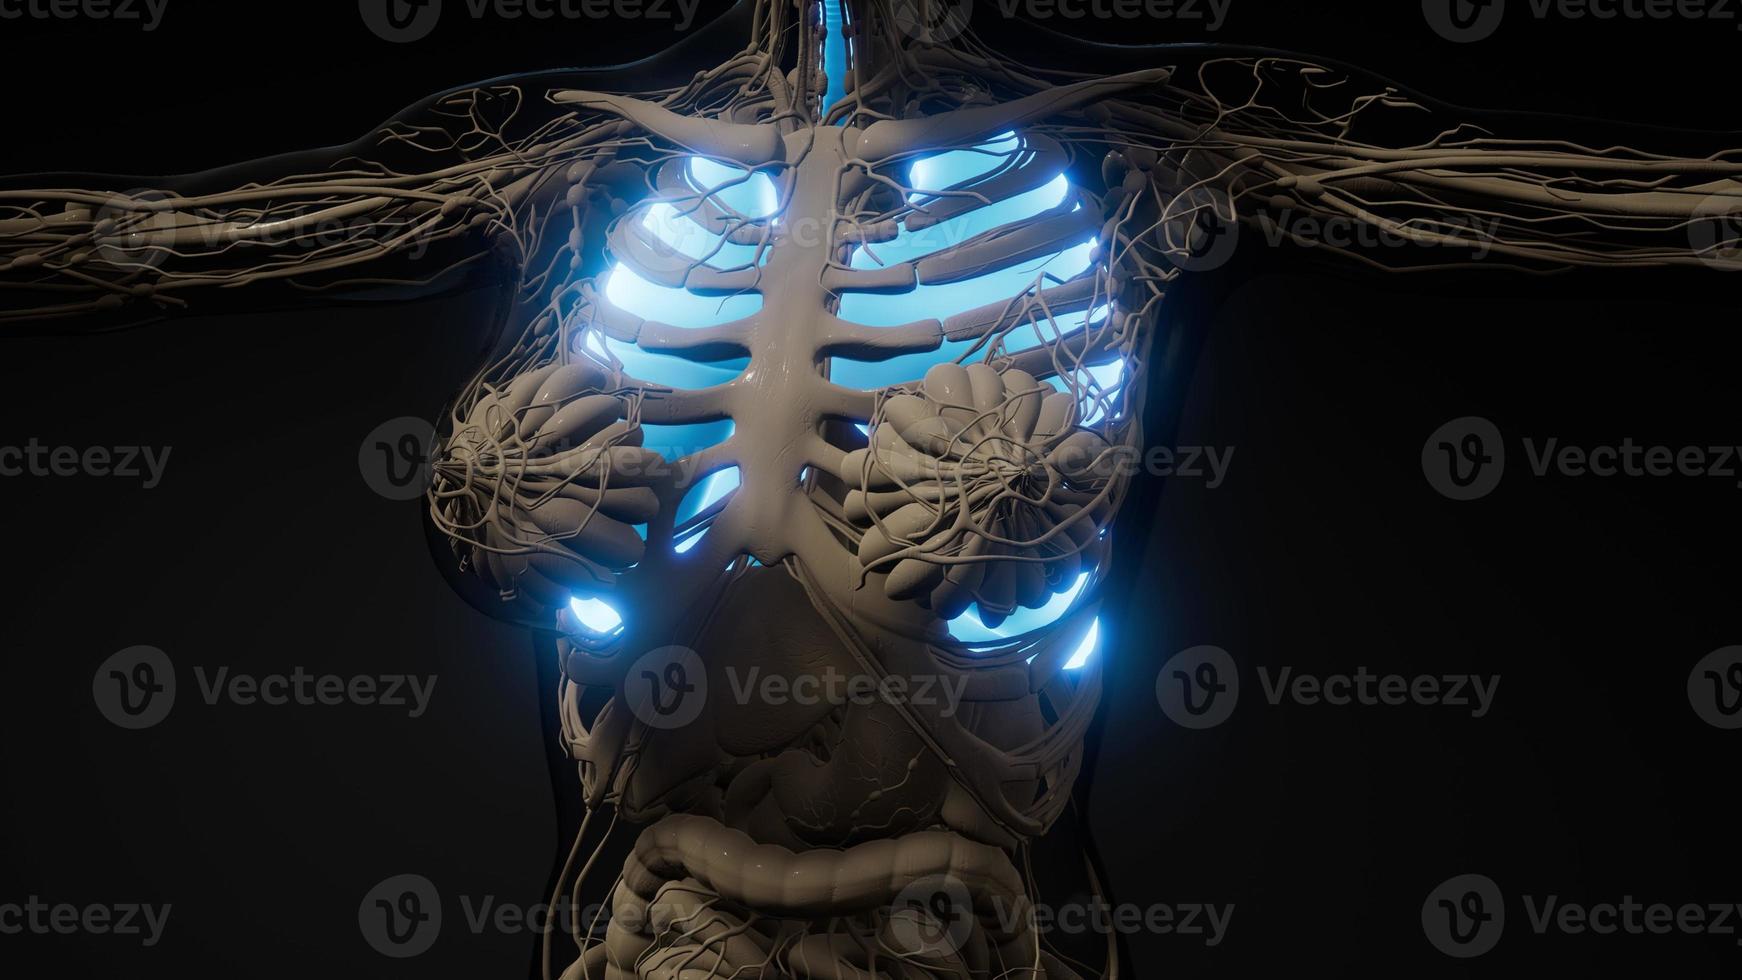 examen de radiología de pulmones humanos foto